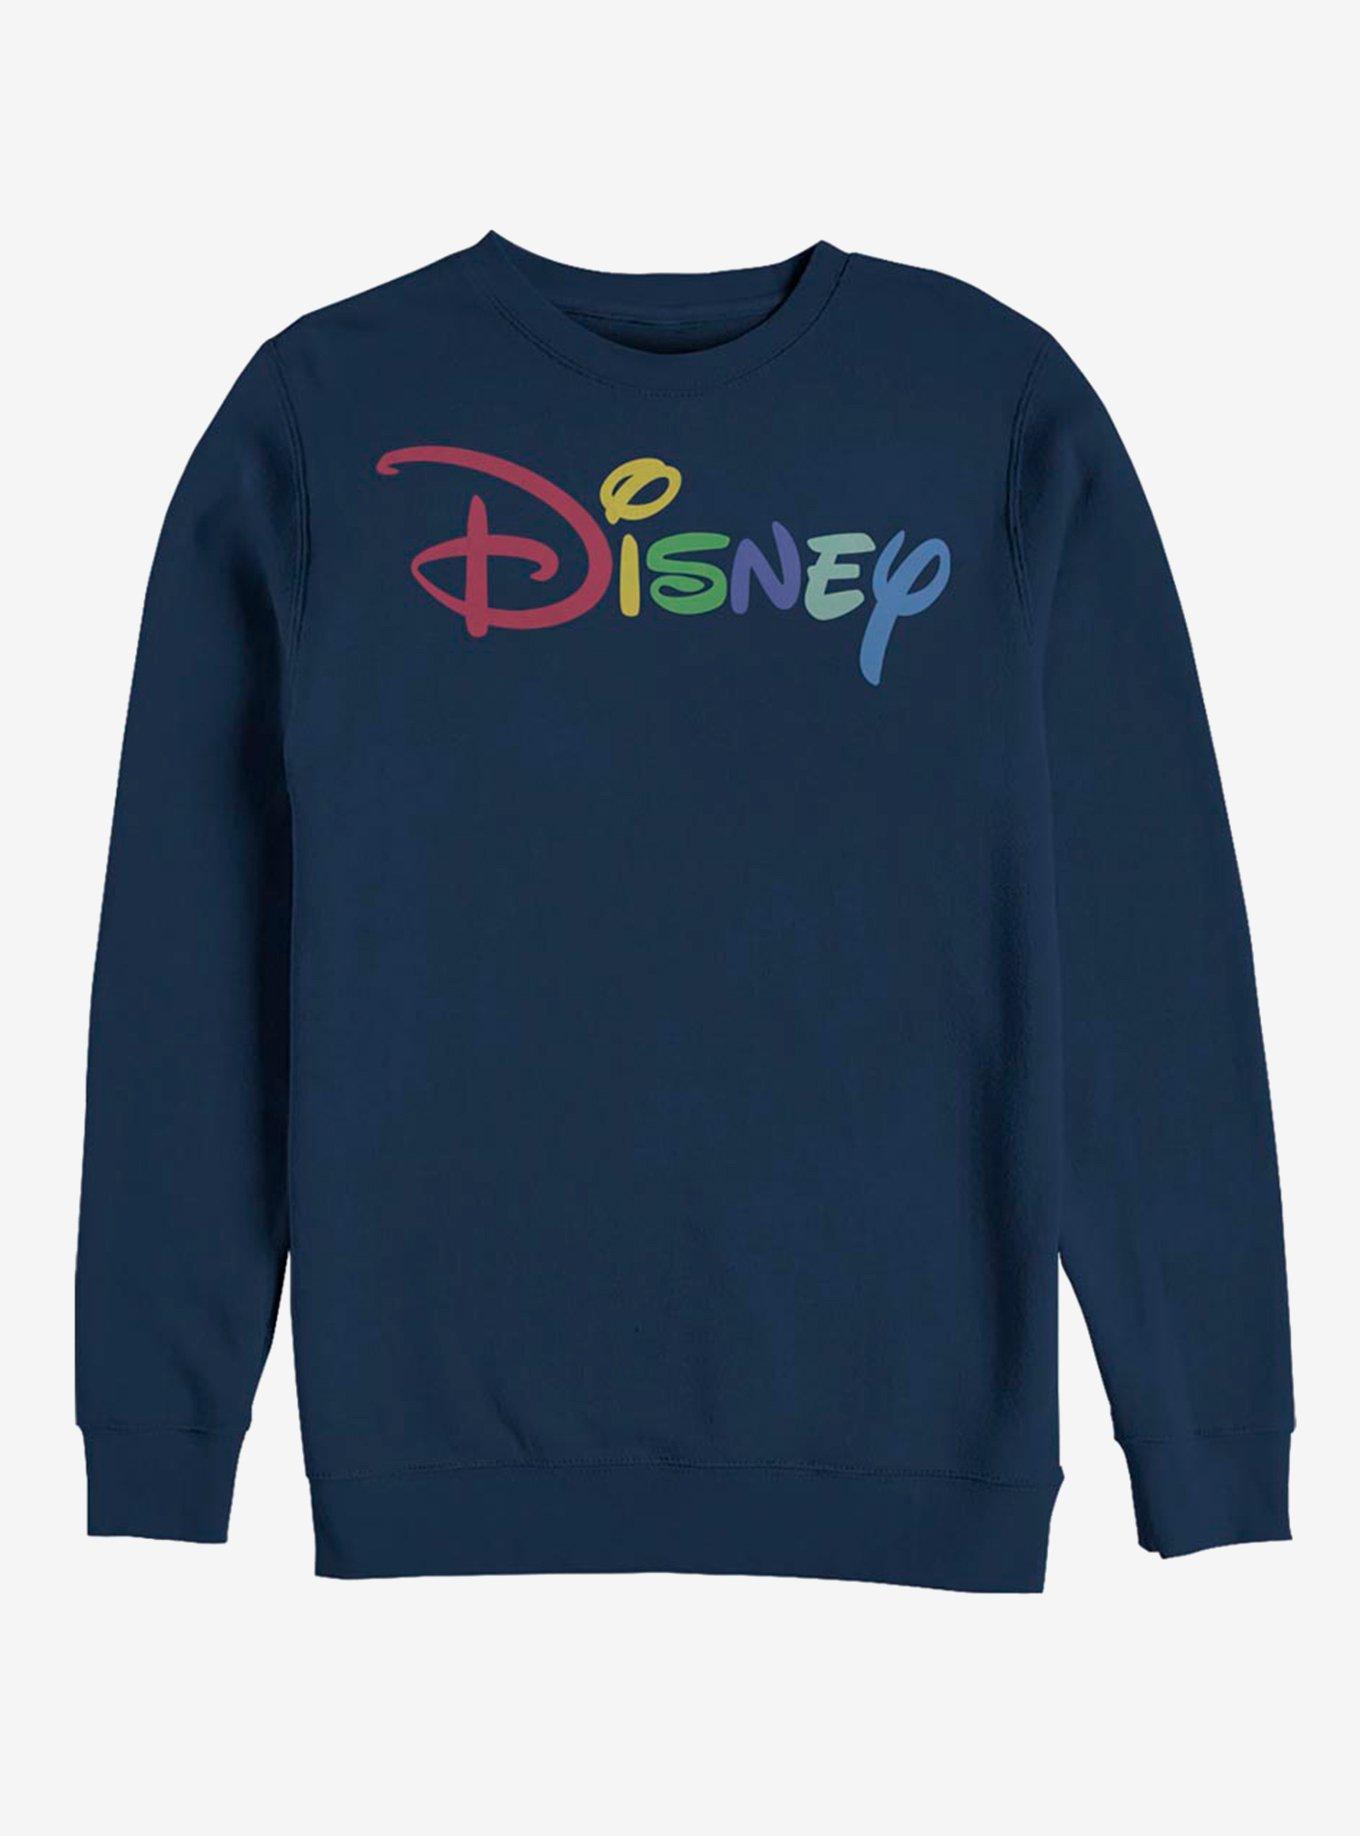 Disney Classic Multicolor Disney Logo Crew Sweatshirt, NAVY, hi-res